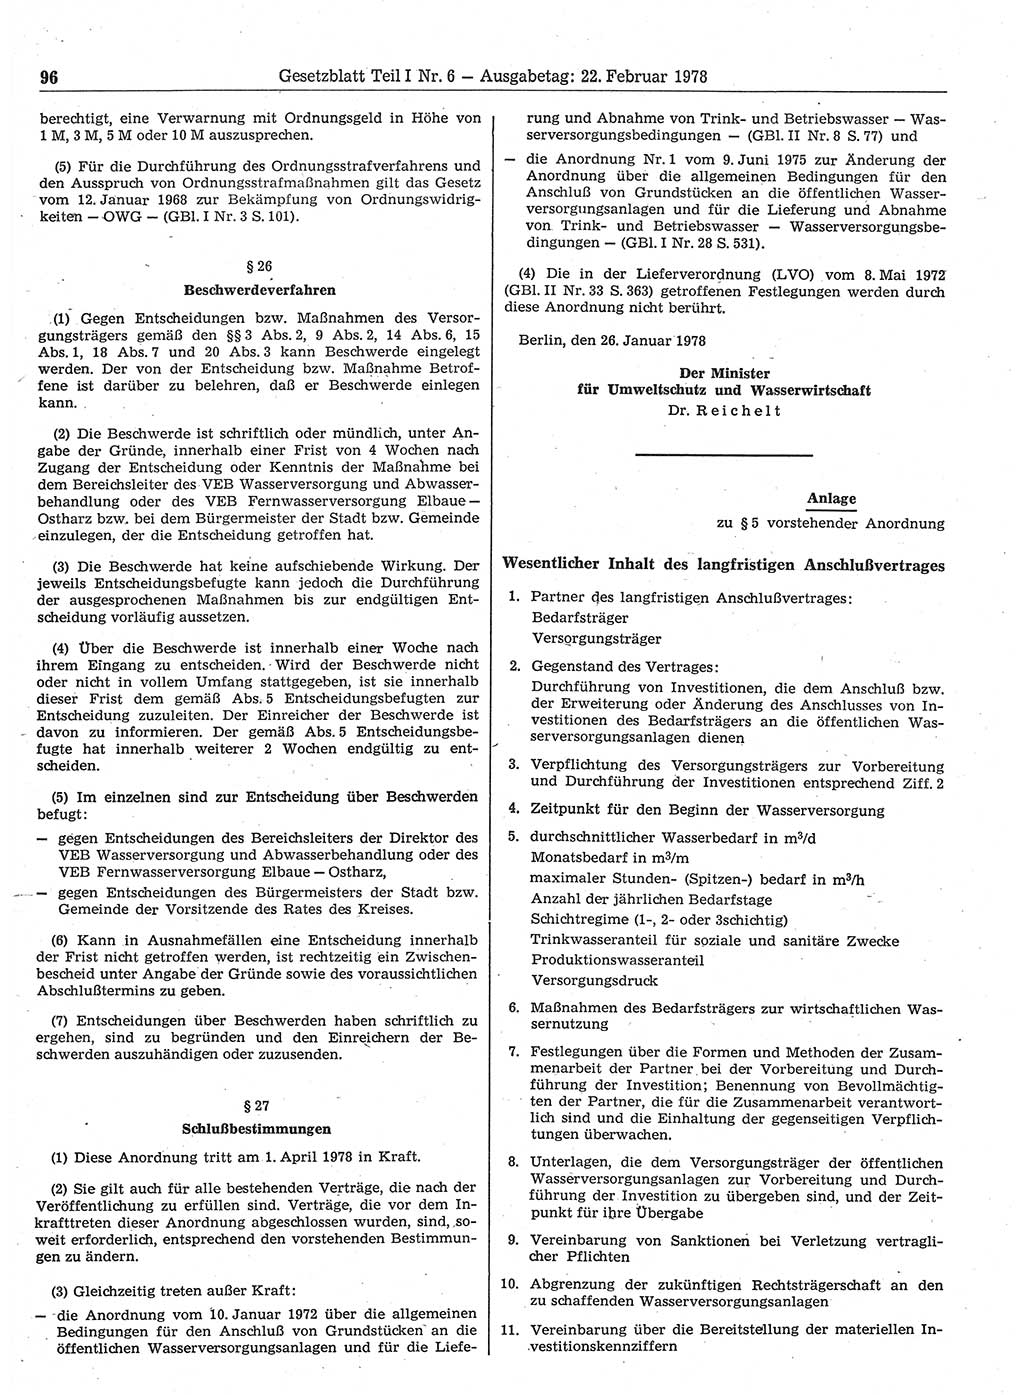 Gesetzblatt (GBl.) der Deutschen Demokratischen Republik (DDR) Teil Ⅰ 1978, Seite 96 (GBl. DDR Ⅰ 1978, S. 96)